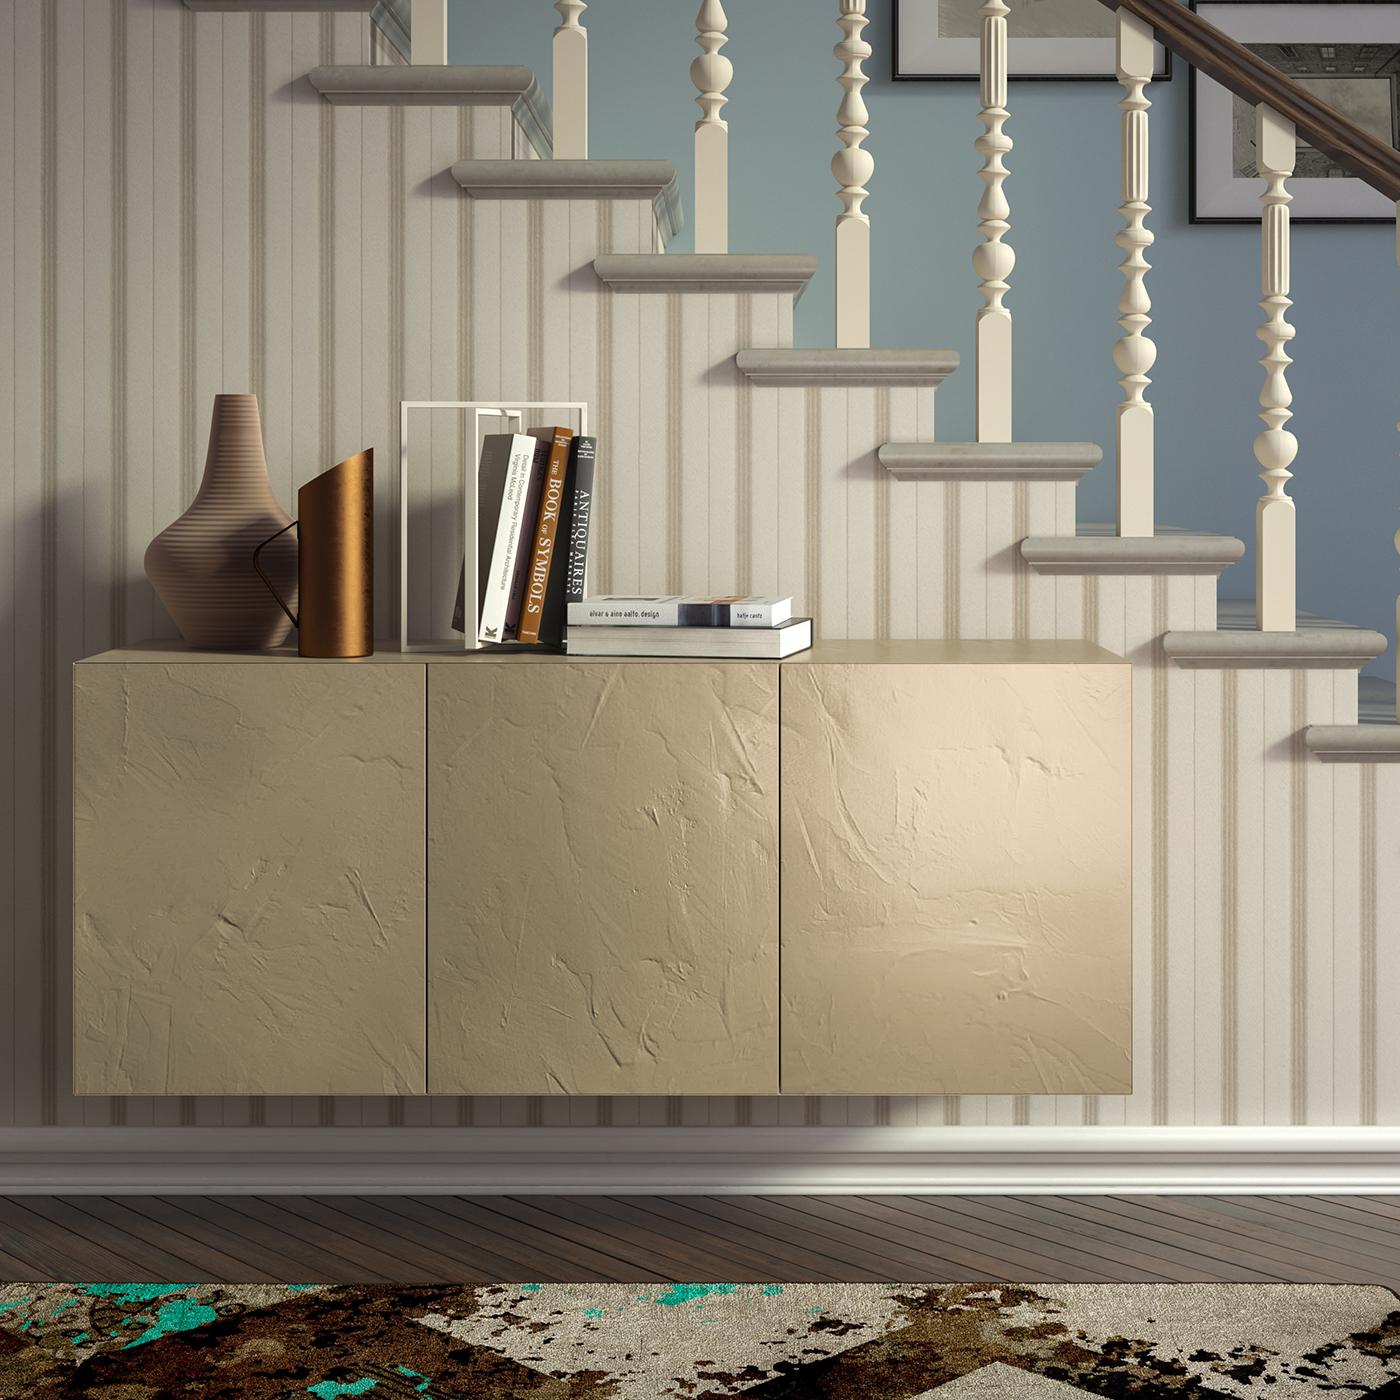 Dieser schlichte und moderne Wandschrank ist ein vielseitiger Behälter für eine elegante Inneneinrichtung, der in jedem Raum des Hauses verwendet werden kann. Die von einer minimalistischen Ästhetik geprägte Struktur hat 45°-Kanten und besteht aus